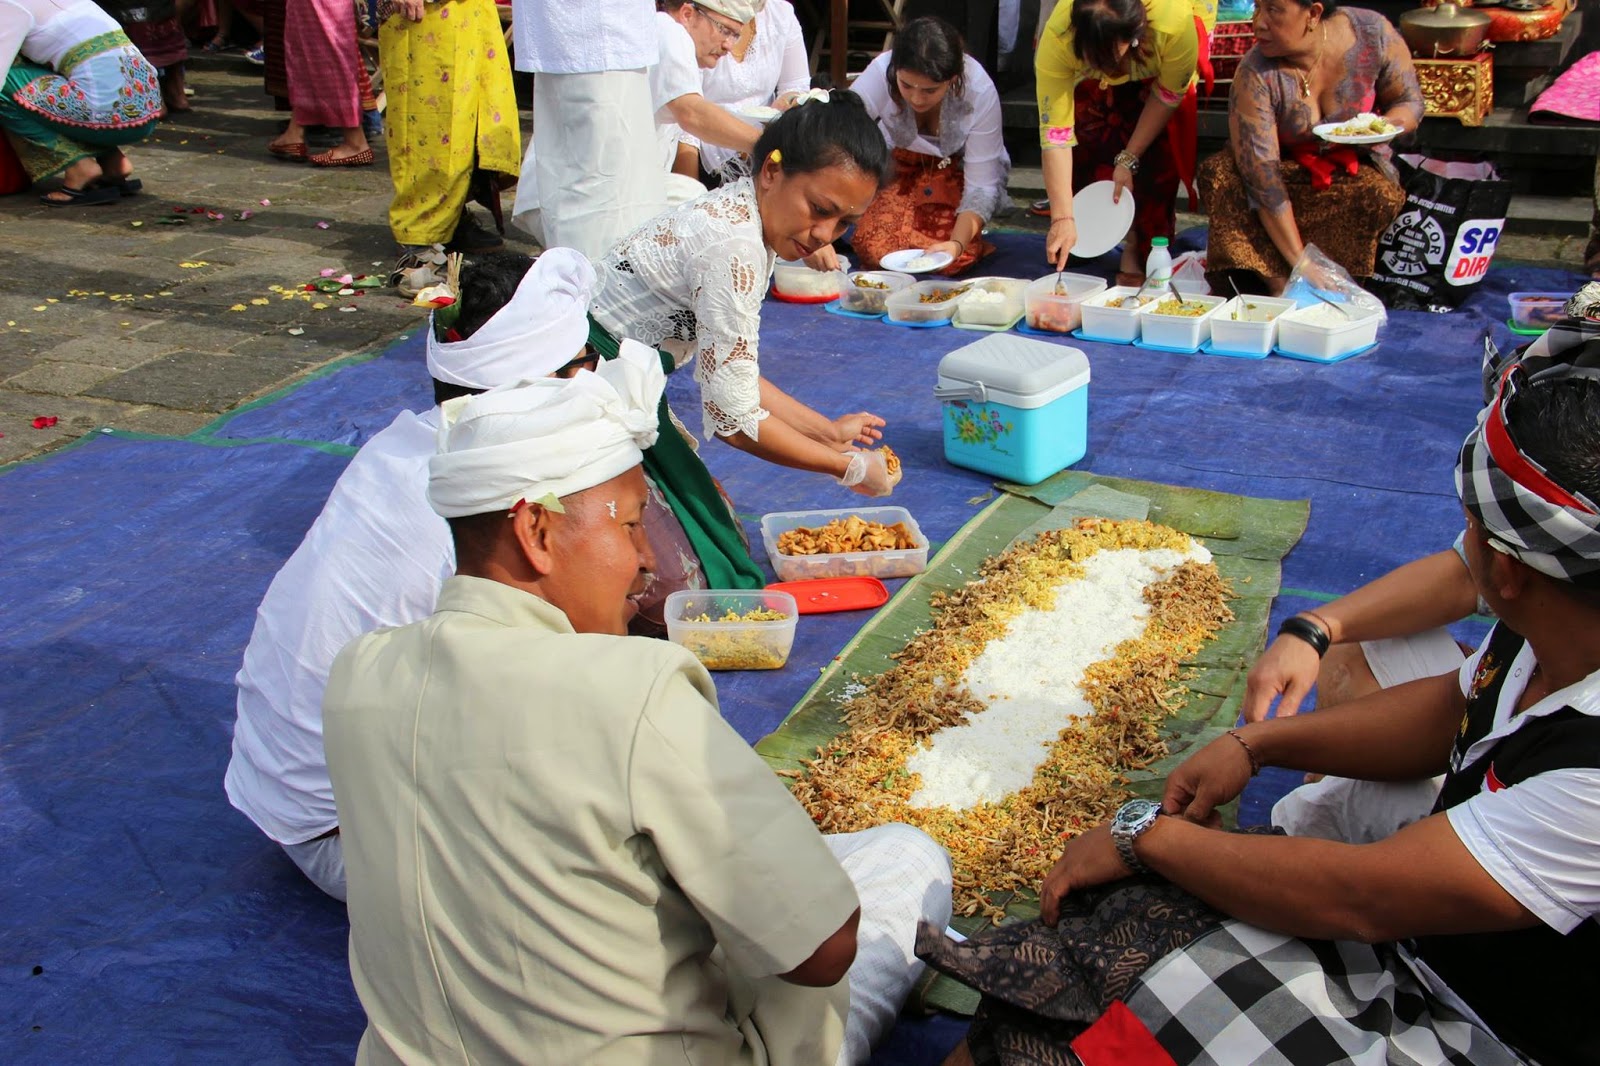 8 Tradisi Unik Menyambut Ramadhan di Indonesia